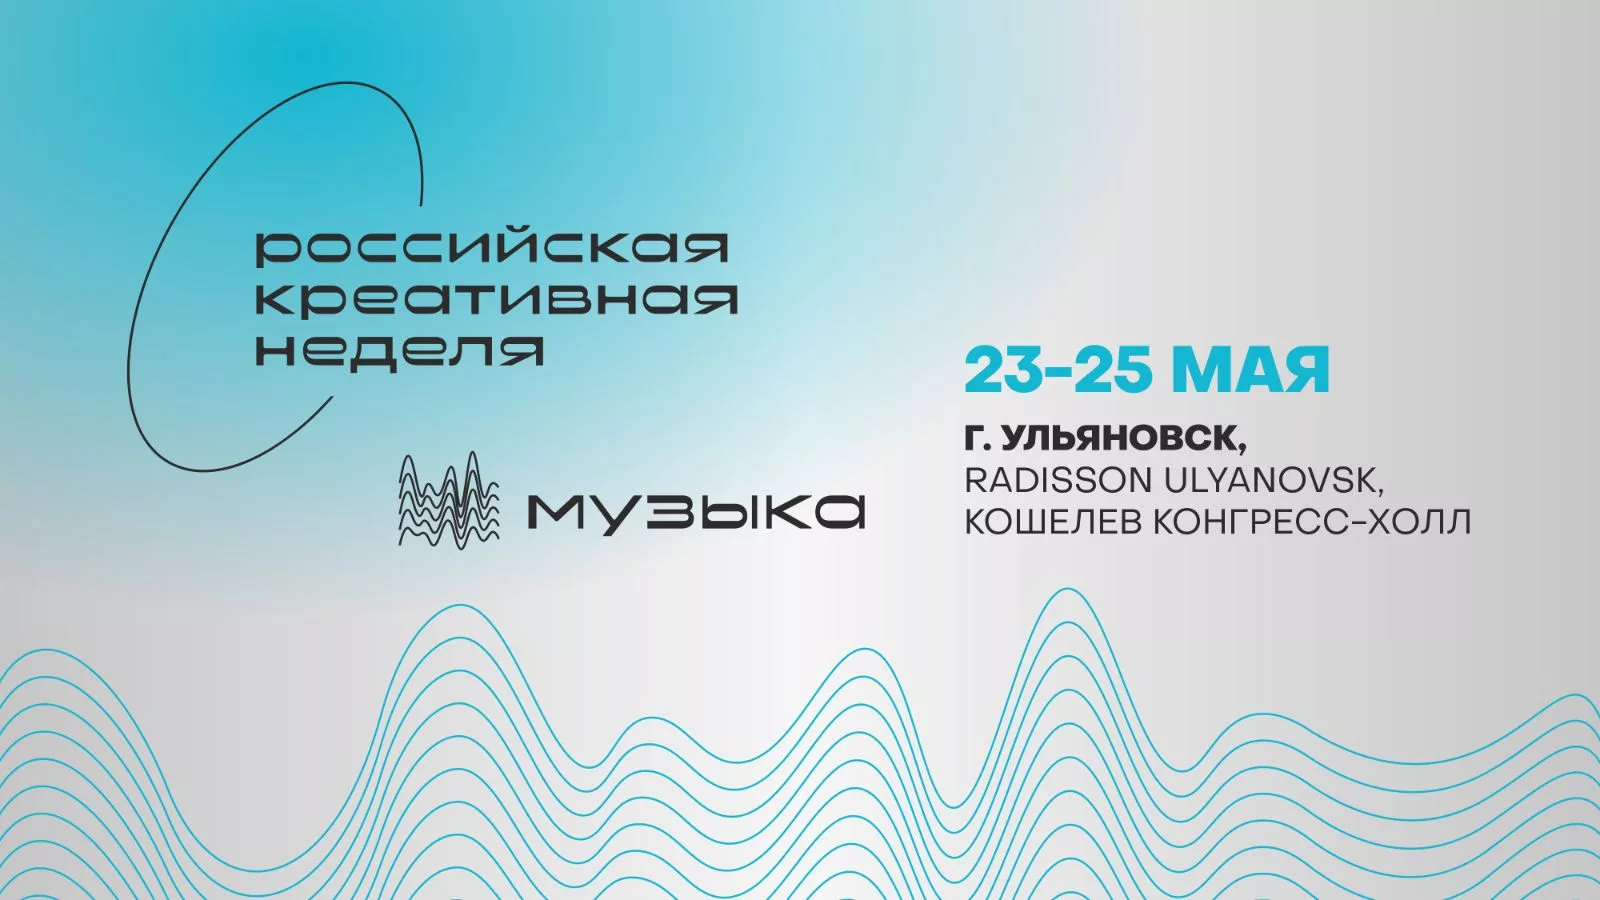 «Российская креативная неделя – Музыка» прозвучит в Ульяновске уже в мае